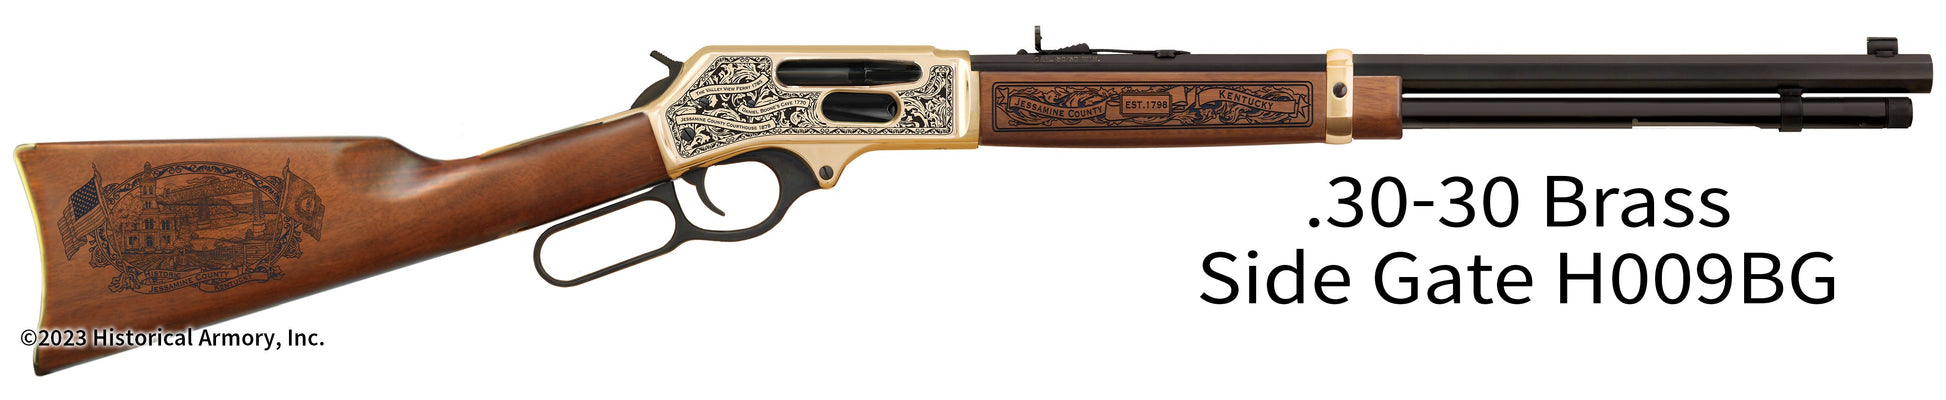 Jessamine County Kentucky Engraved Henry .30-30 Brass Side Gate Rifle